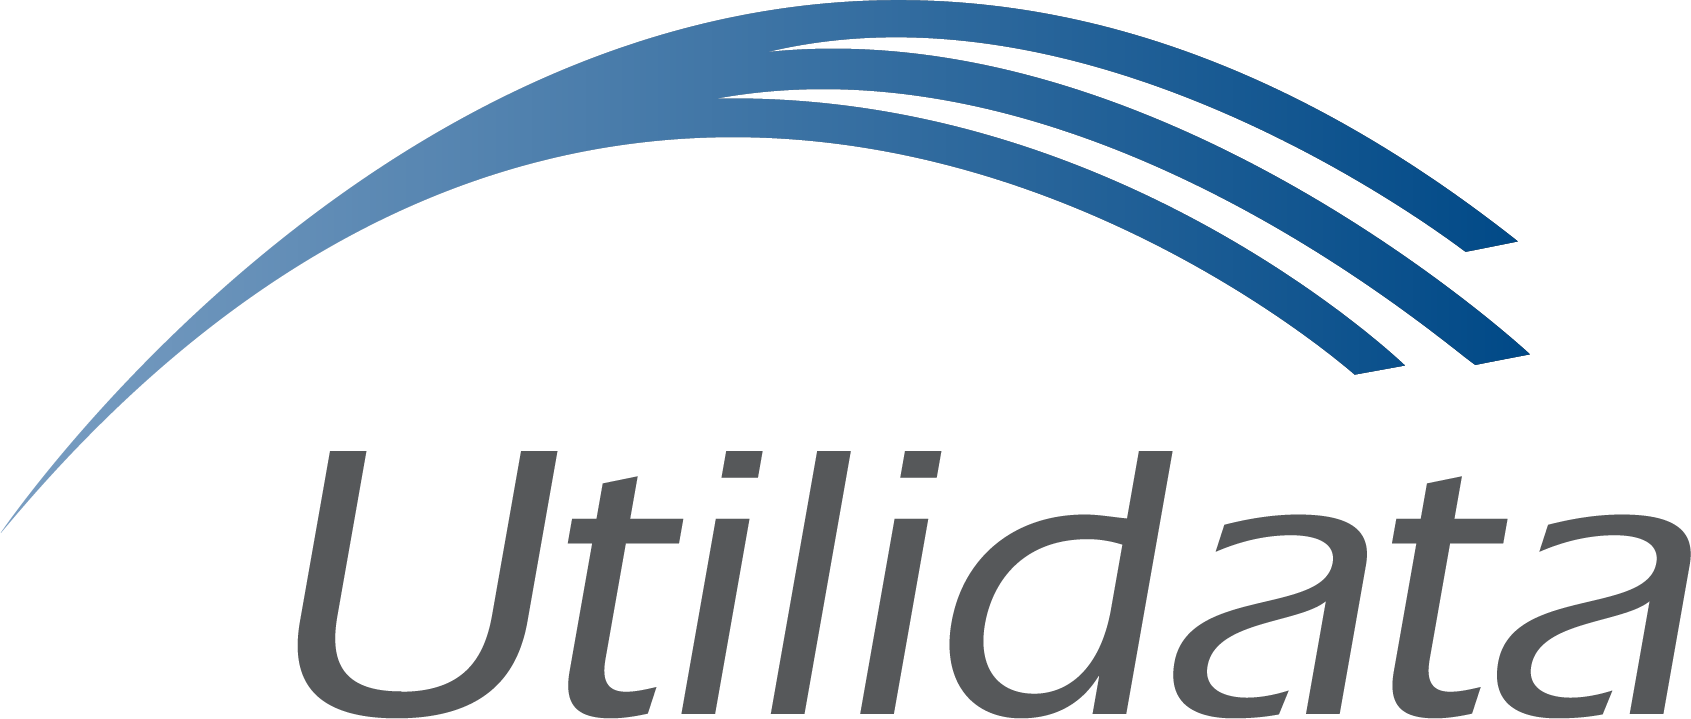 Utilidata Announces 